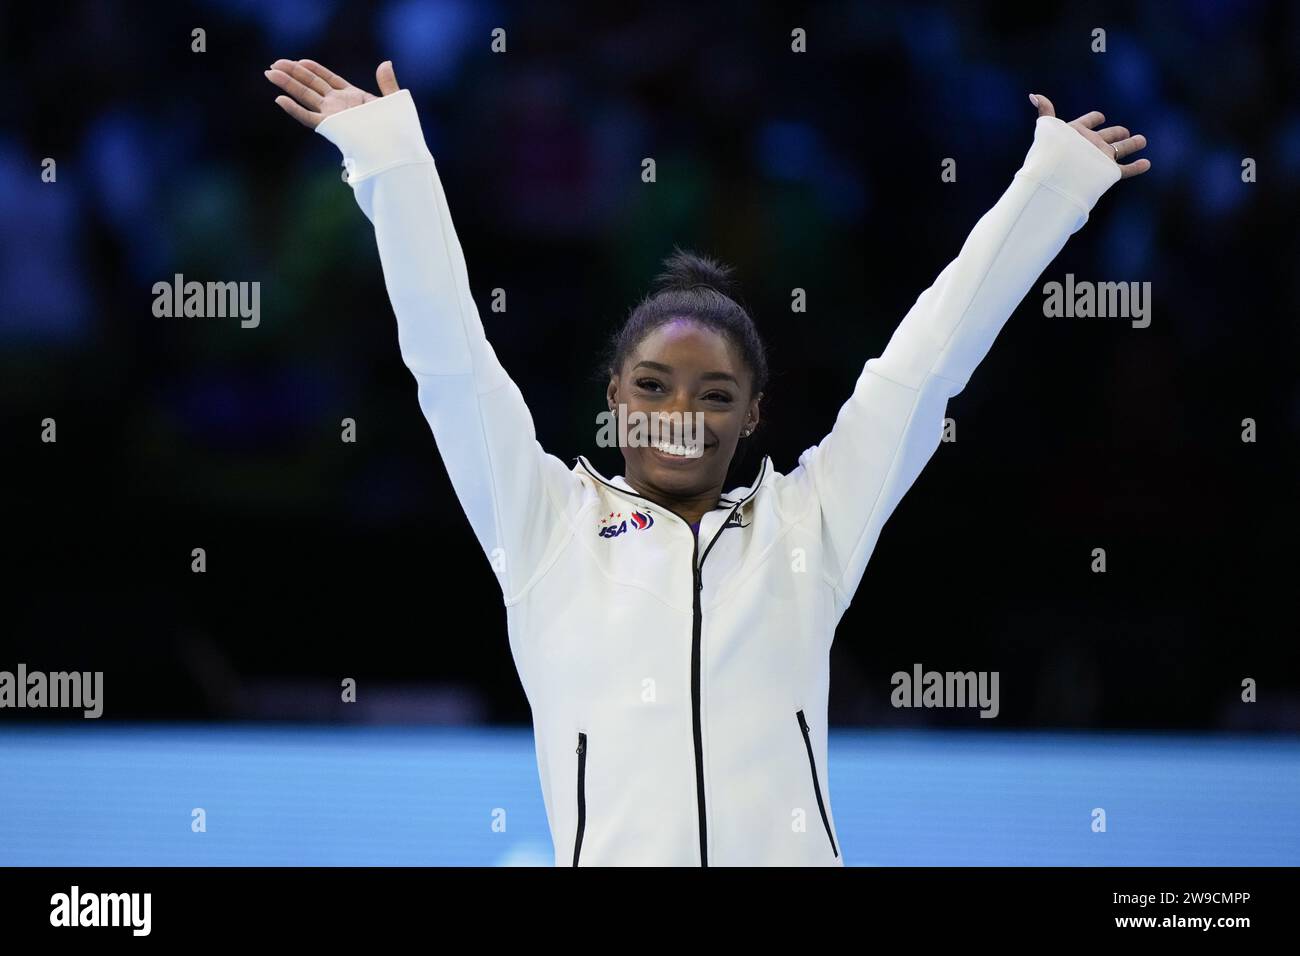 (231227) -- PÉKIN, 27 déc. 2023 (Xinhua) -- alors que l'année sportive touche à sa fin, voici la sélection des 10 meilleurs athlètes du monde en 2023:10, par l'agence de presse Xinhua. Simone Biles (États-Unis, gymnastique) après avoir surmonté les problèmes de santé mentale survenus pendant les Jeux olympiques de Tokyo, Biles a fait un retour triomphal en 2023 en remportant son sixième titre complet aux Championnats du monde de gymnastique artistique. Avec sa 34e médaille aux Jeux olympiques et aux Championnats du monde, la jeune fille de 26 ans a dépassé la légende biélorusse Vitaly Scherbo pour devenir le nouveau détenteur du record avec le plus de médailles. Ce f Banque D'Images